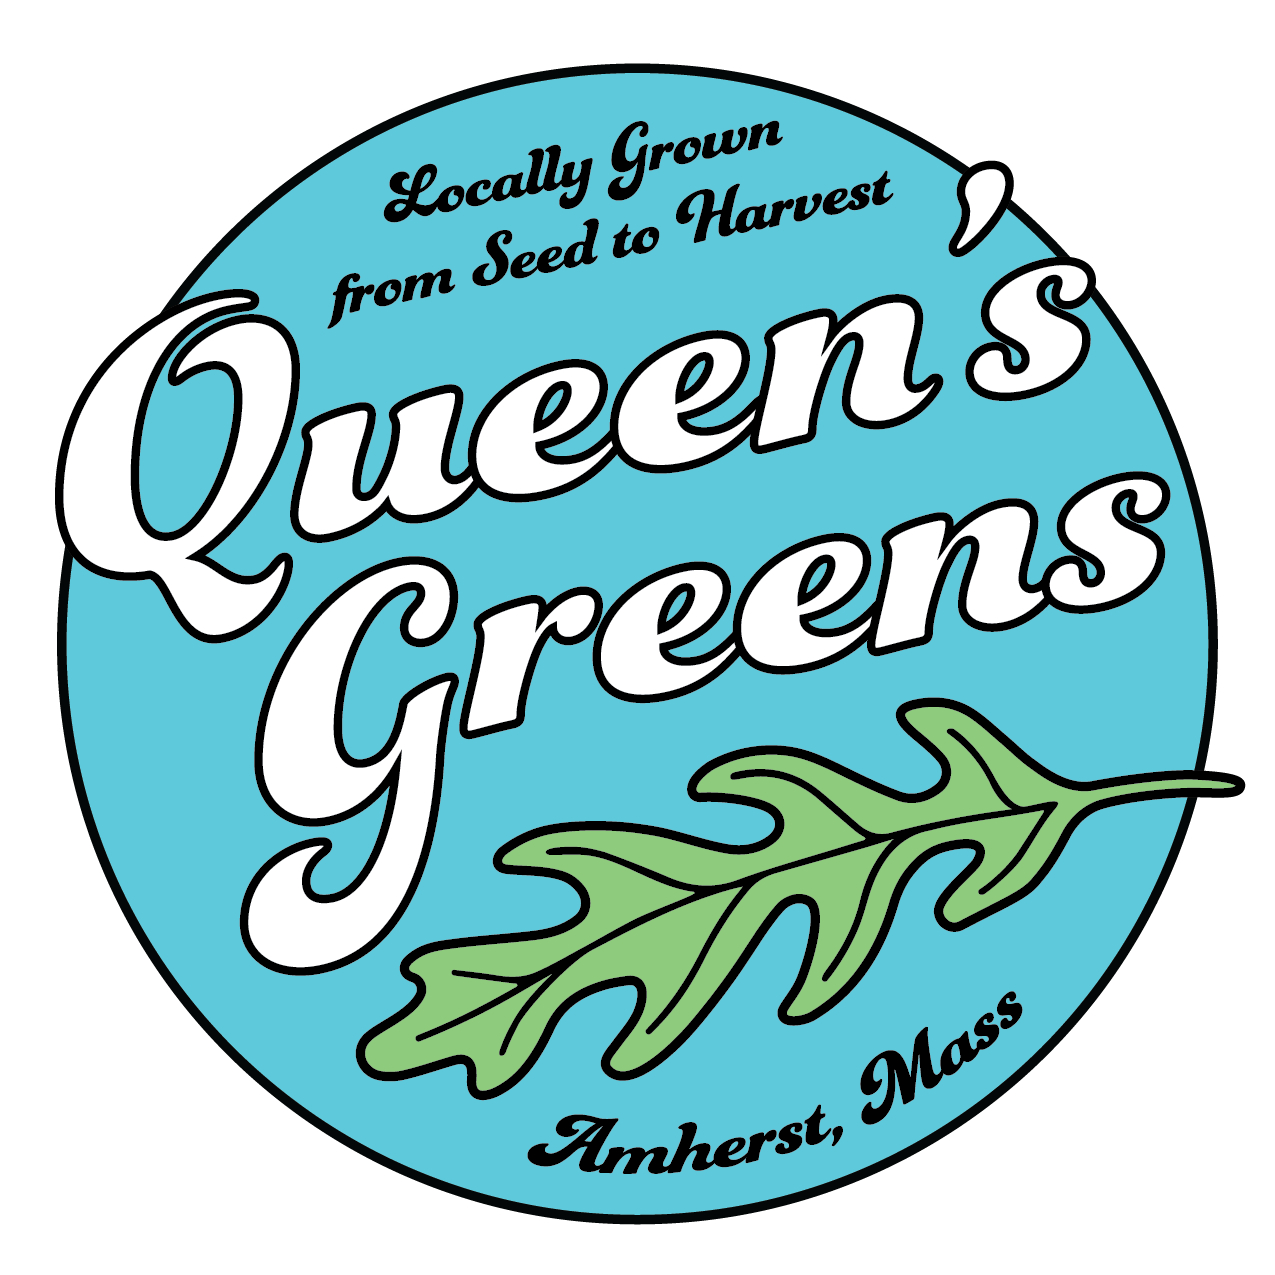 Queen's Greens